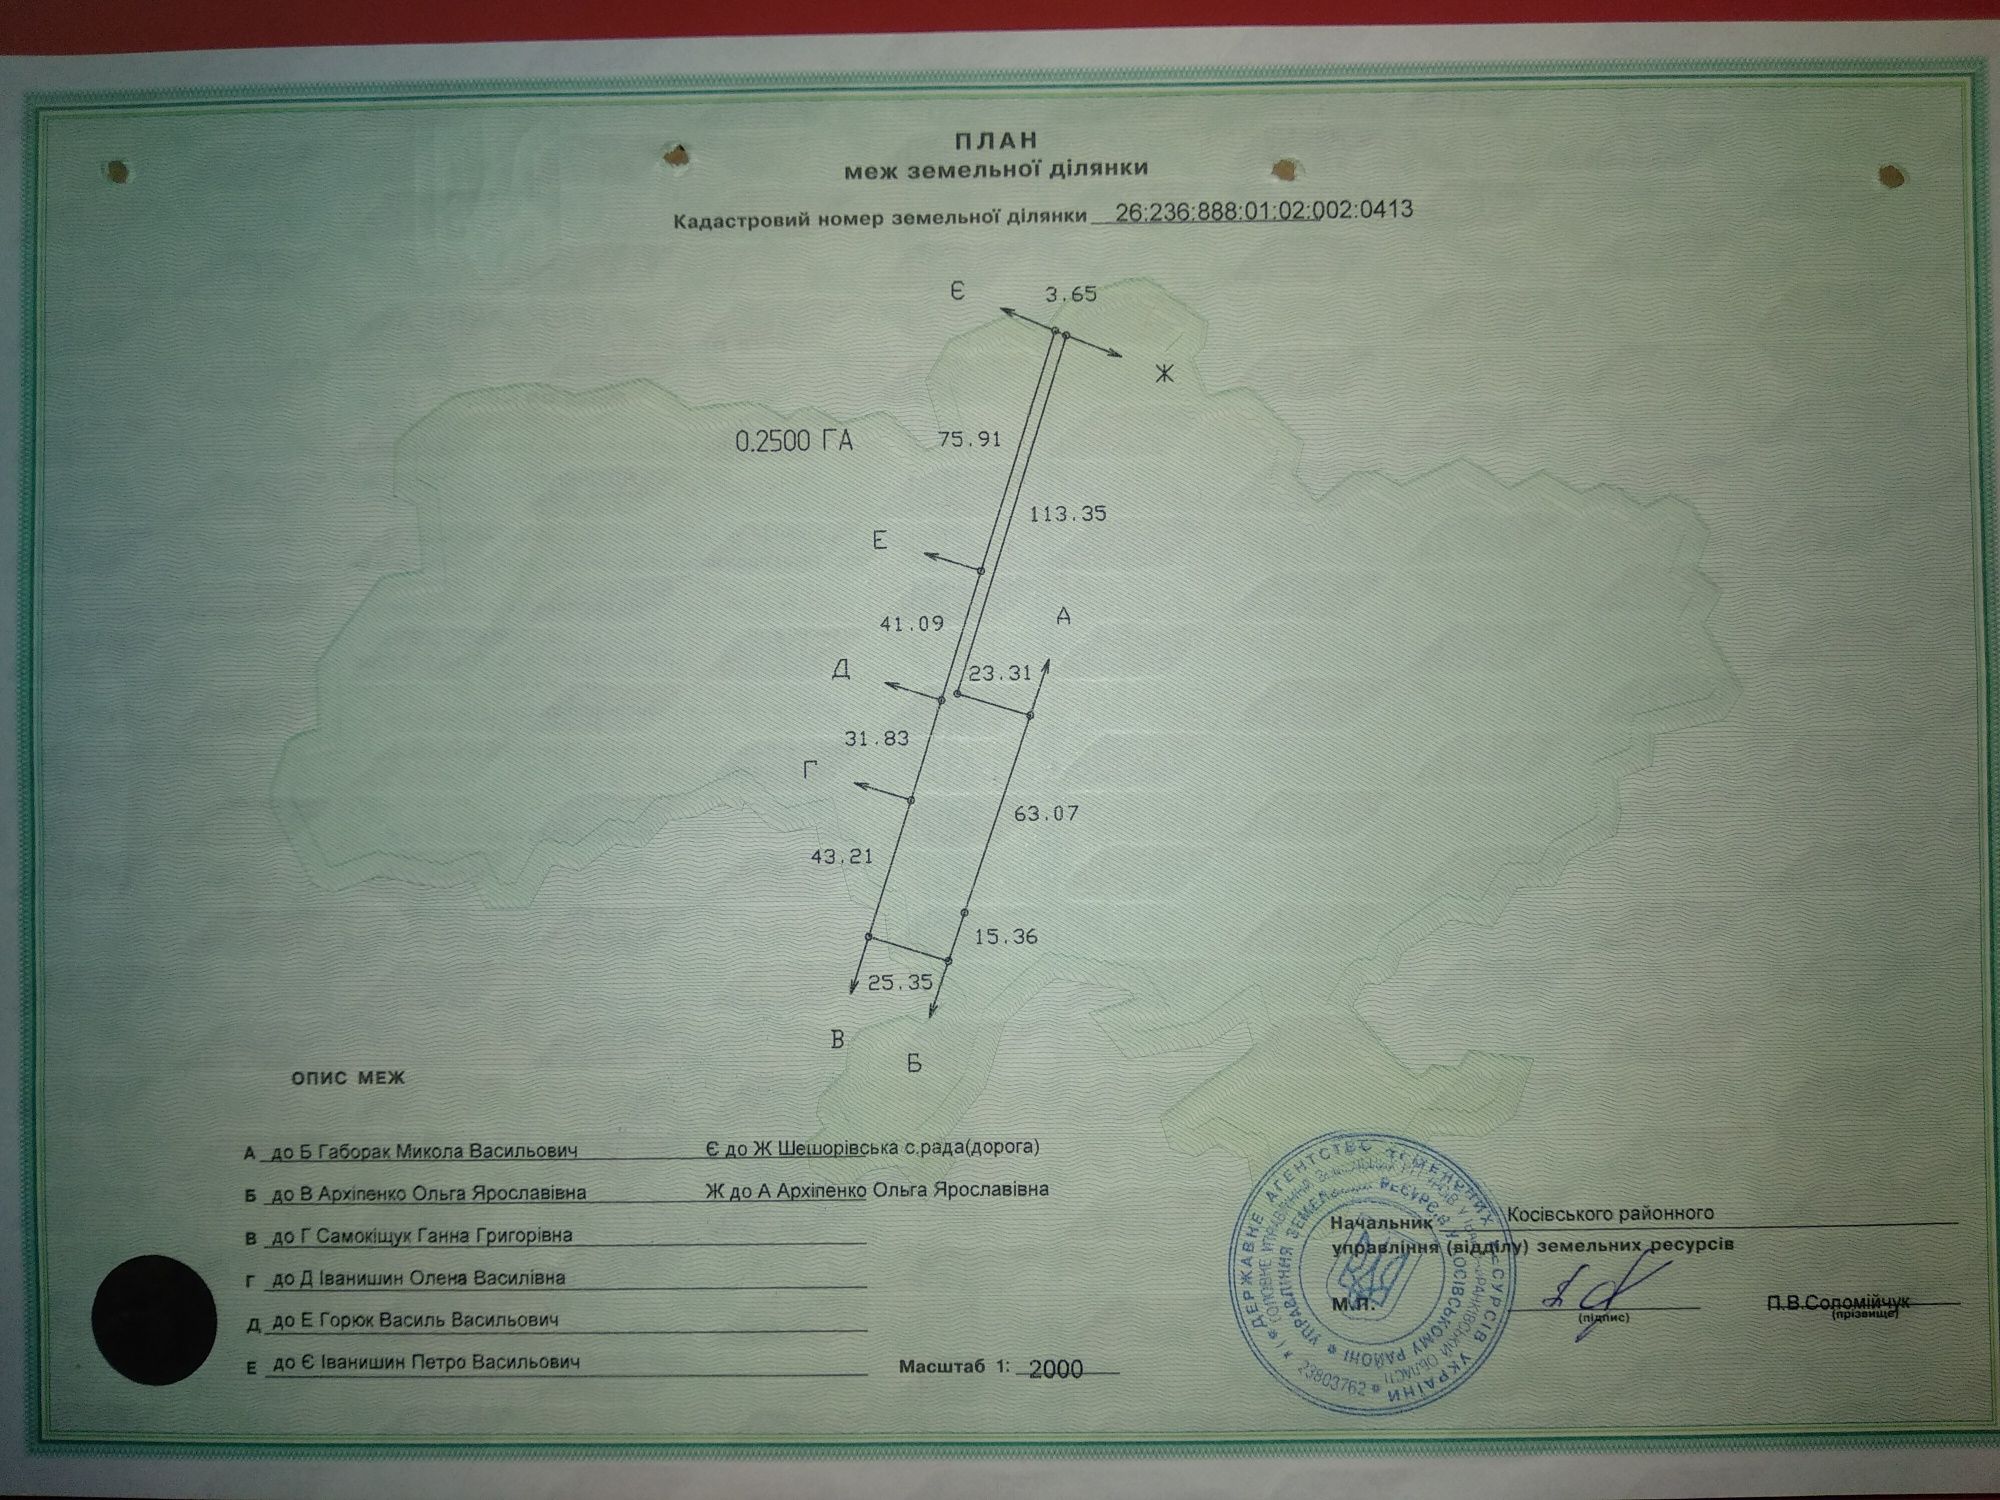 Продаж земельної ділянки площею 0,6га в селі Шешори